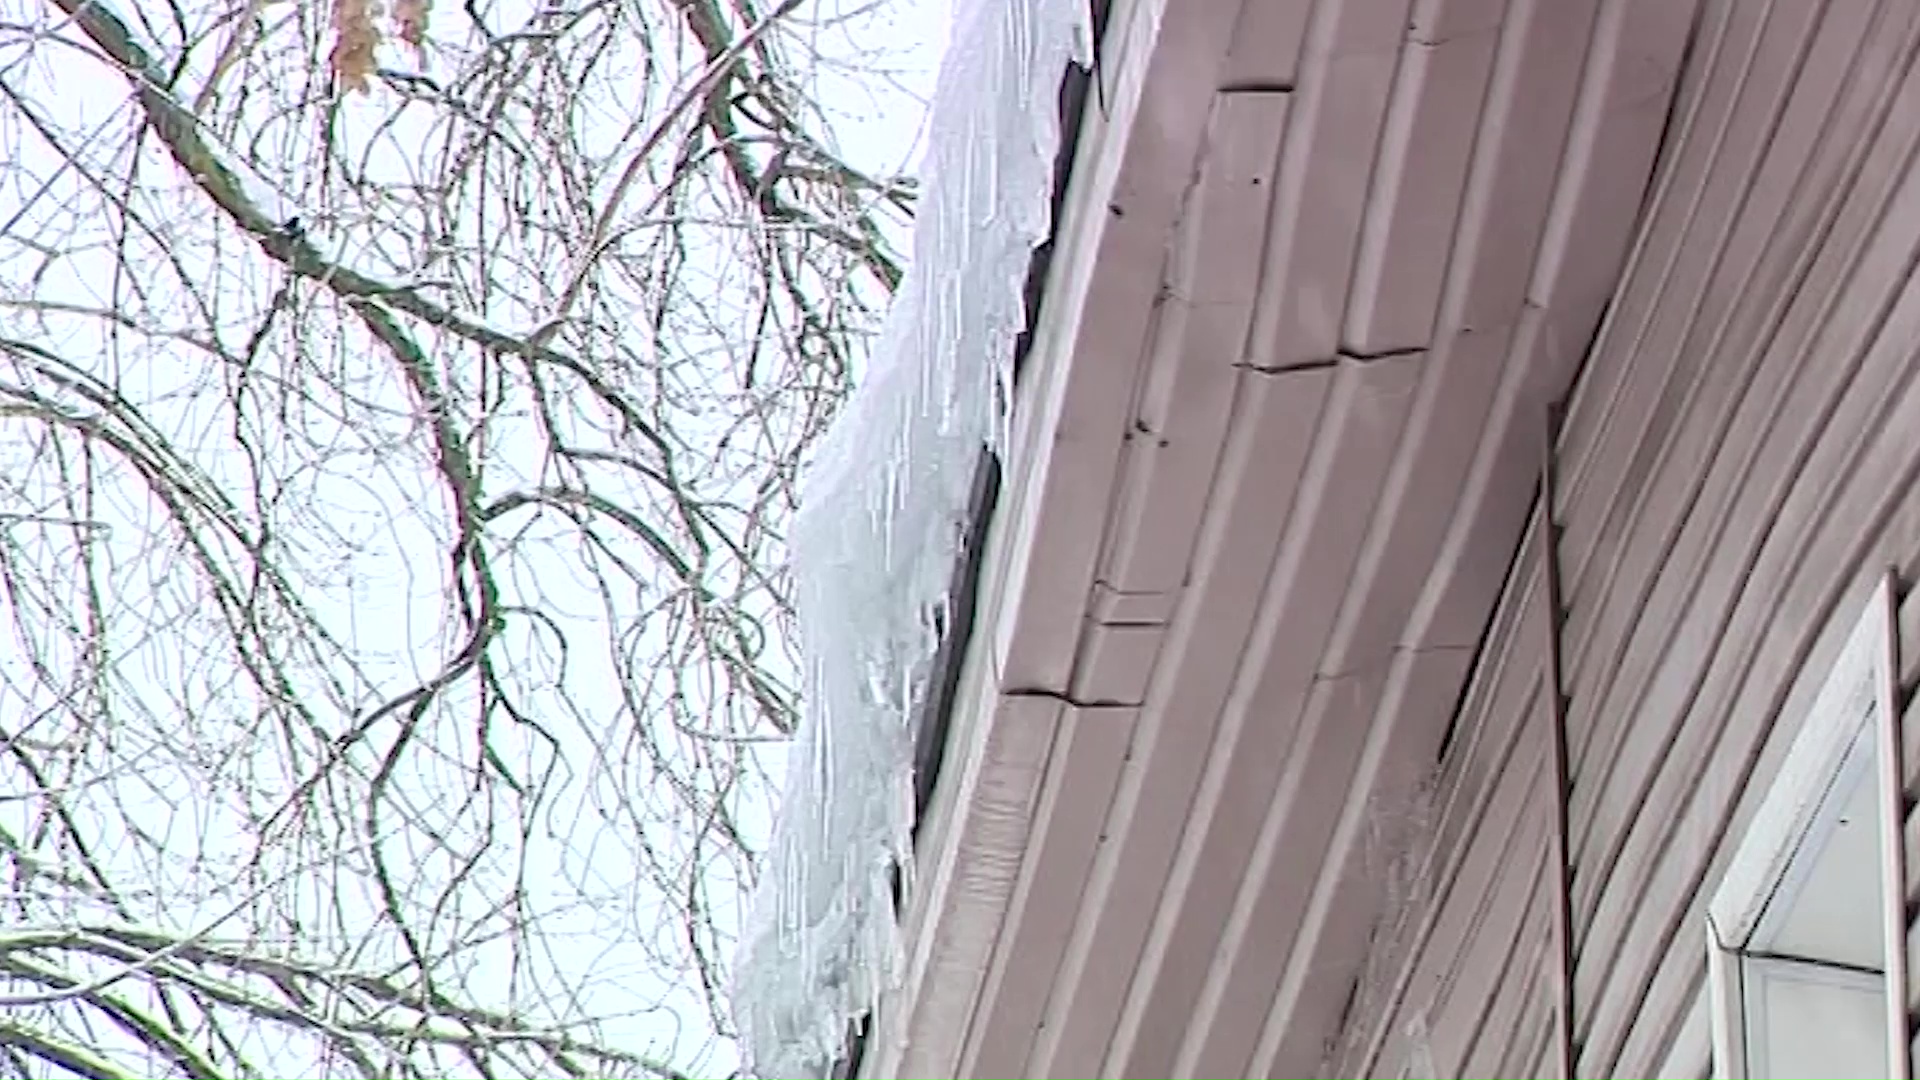 Экс-сотруднику УФСИН грозит пять лет колонии за падение на прохожую тяжелой глыбы льда с крыши